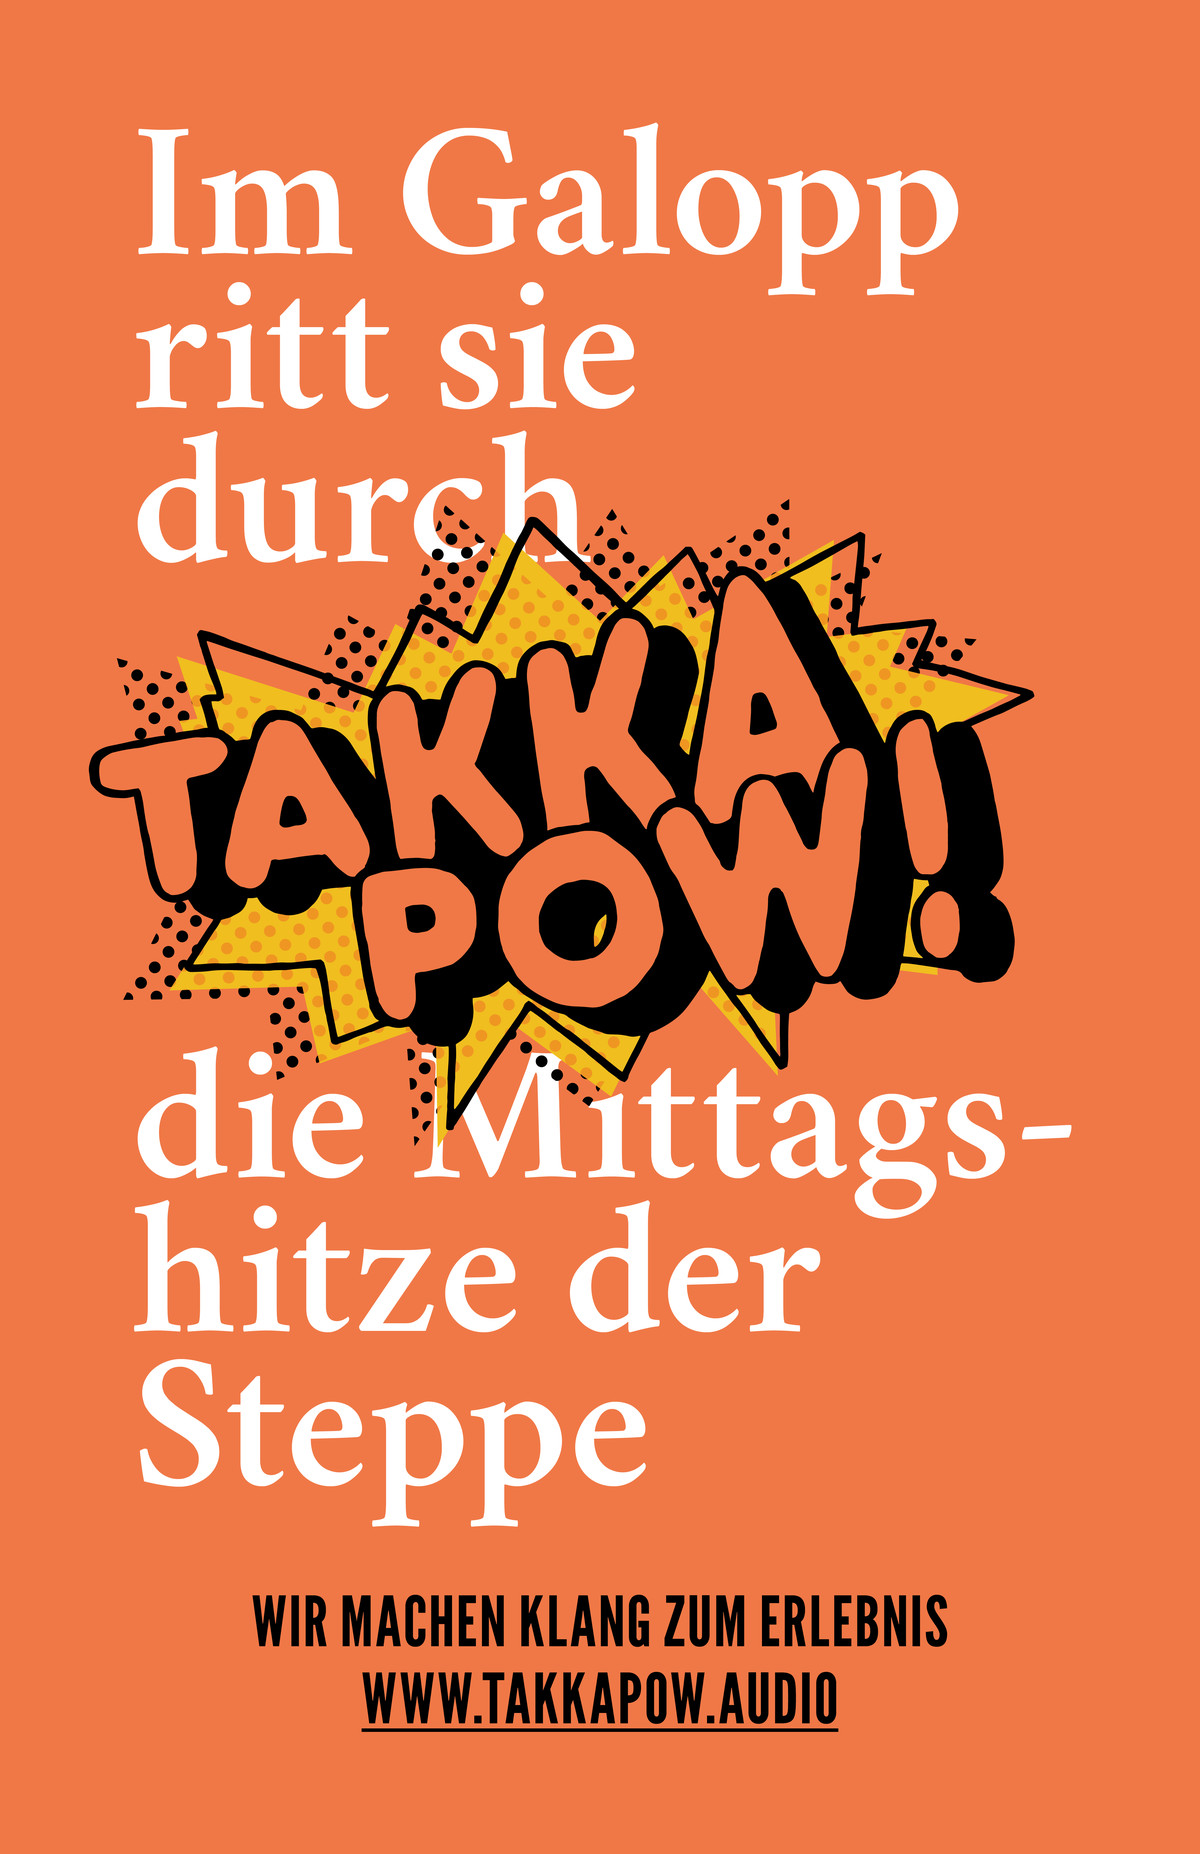 takkapow-text-06.jpg